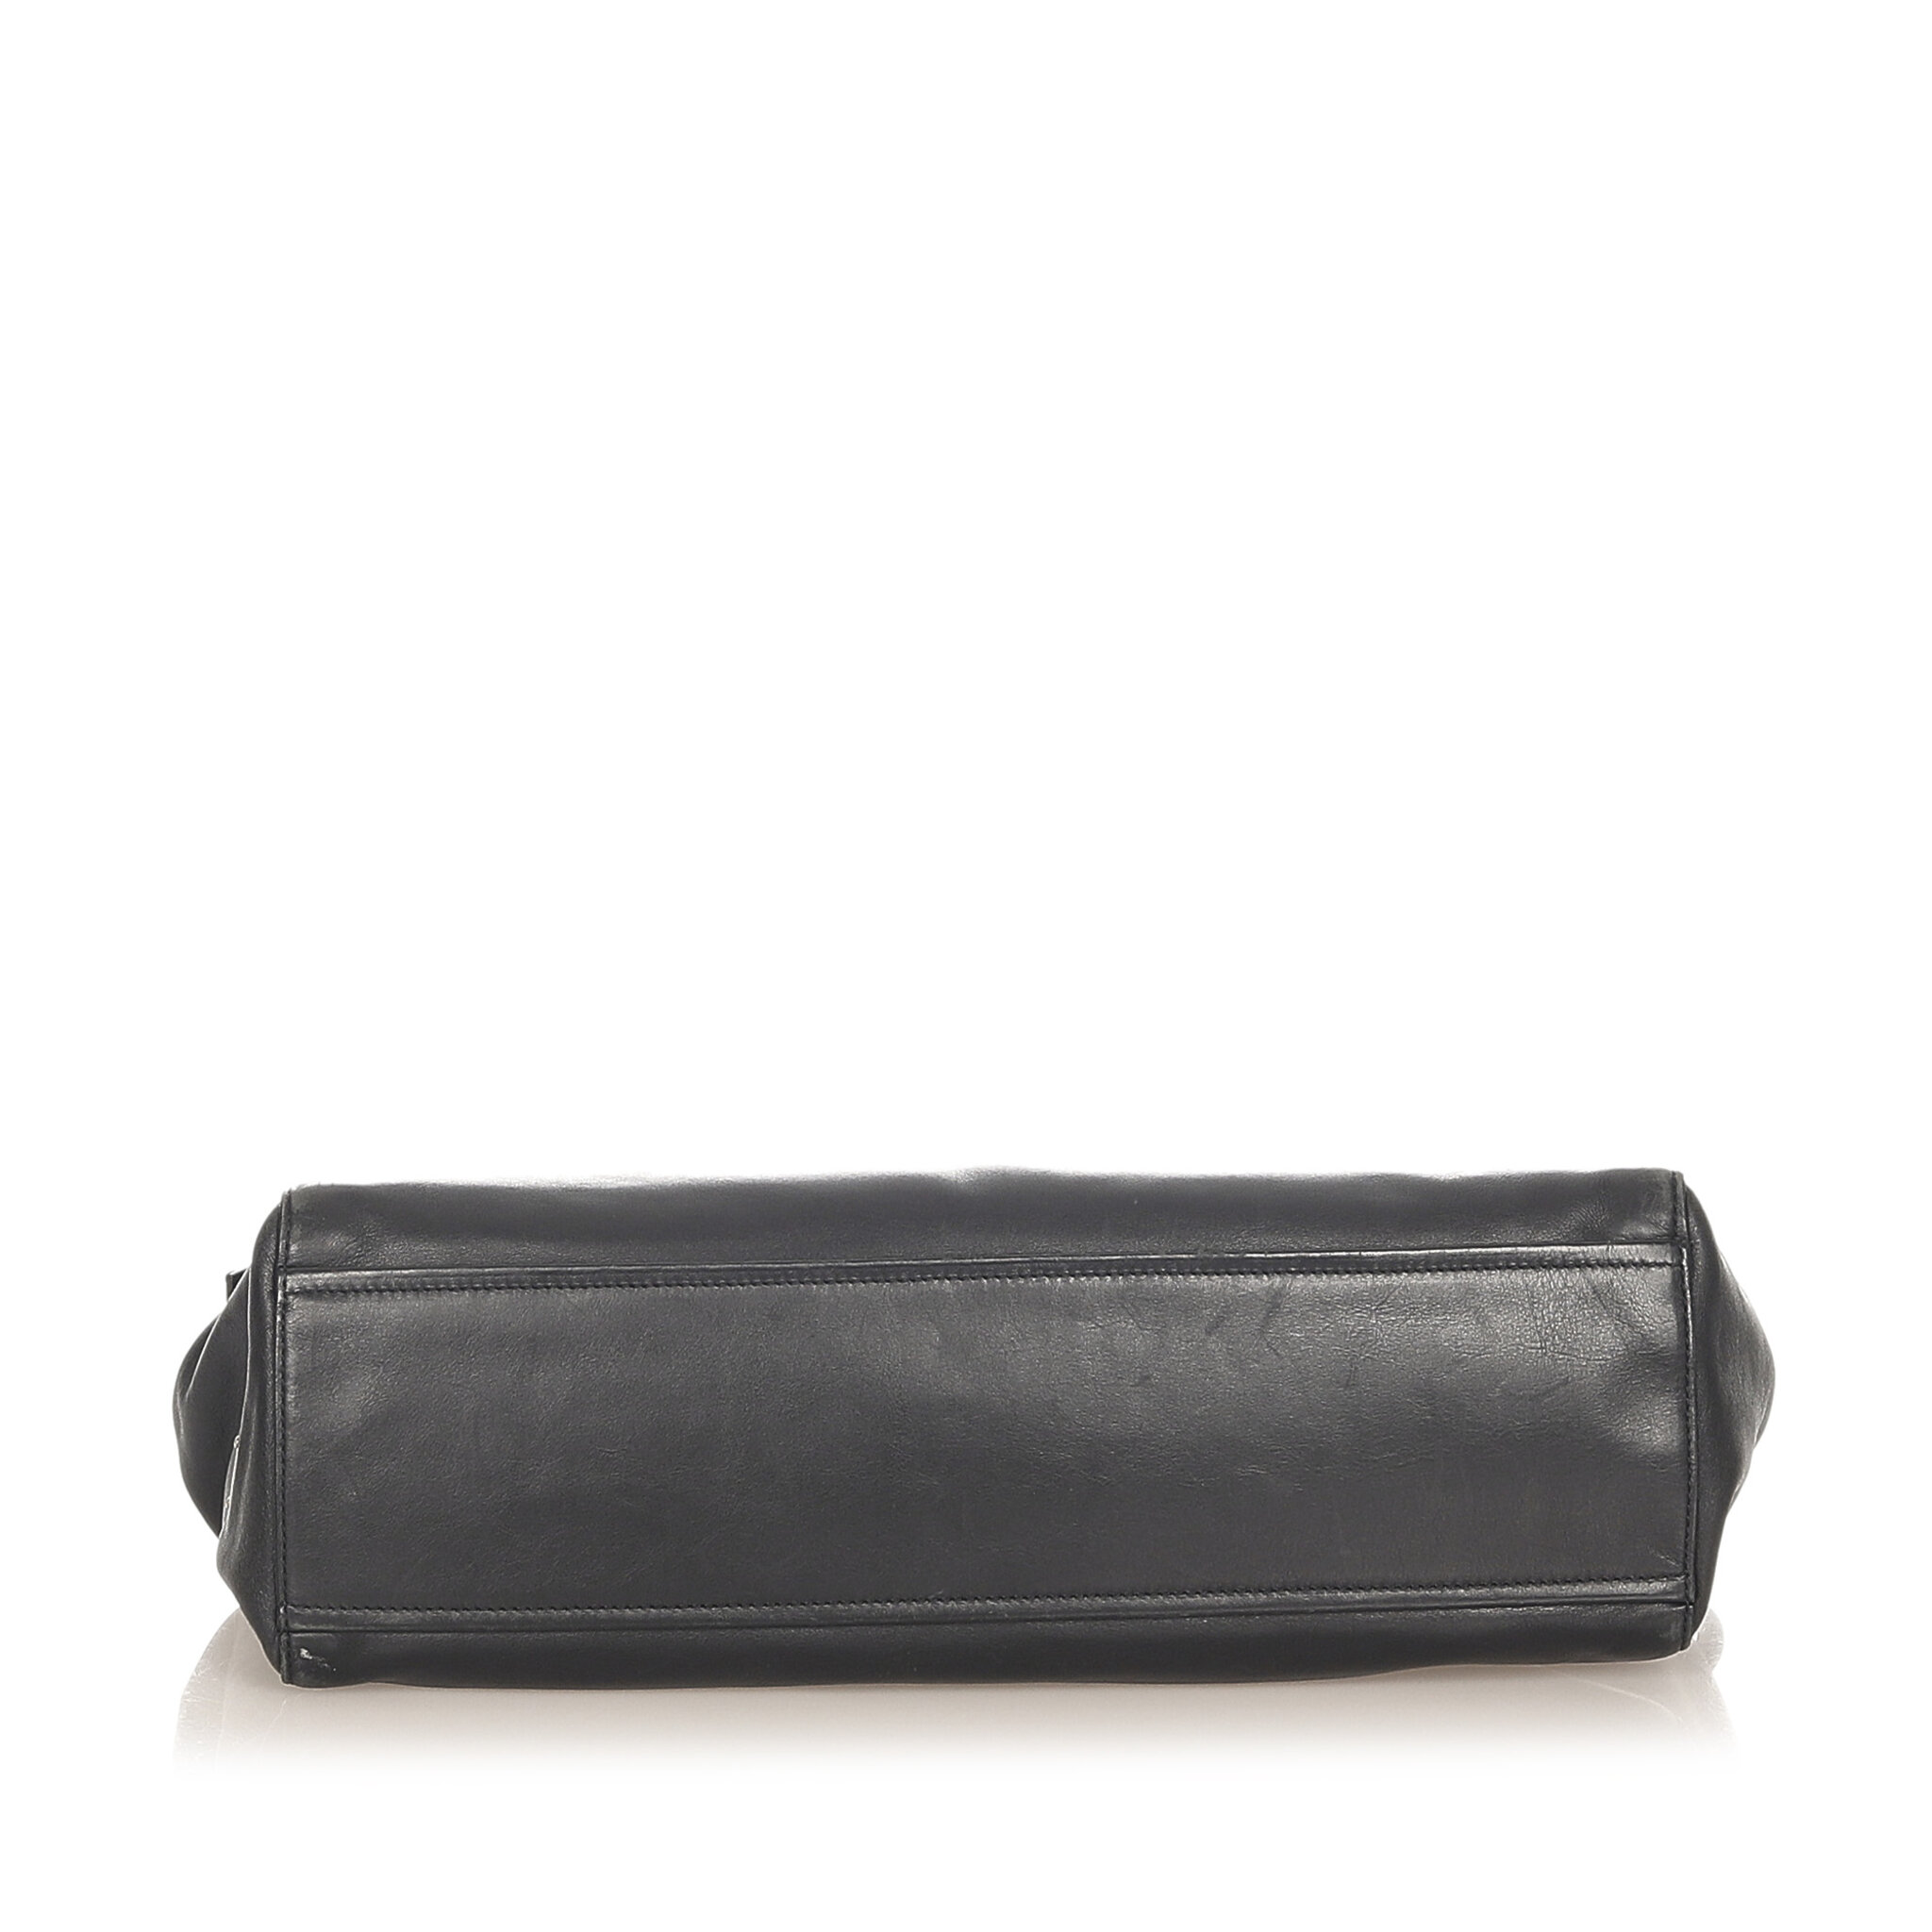 Prada Easy Leather Shoulder Bag, black